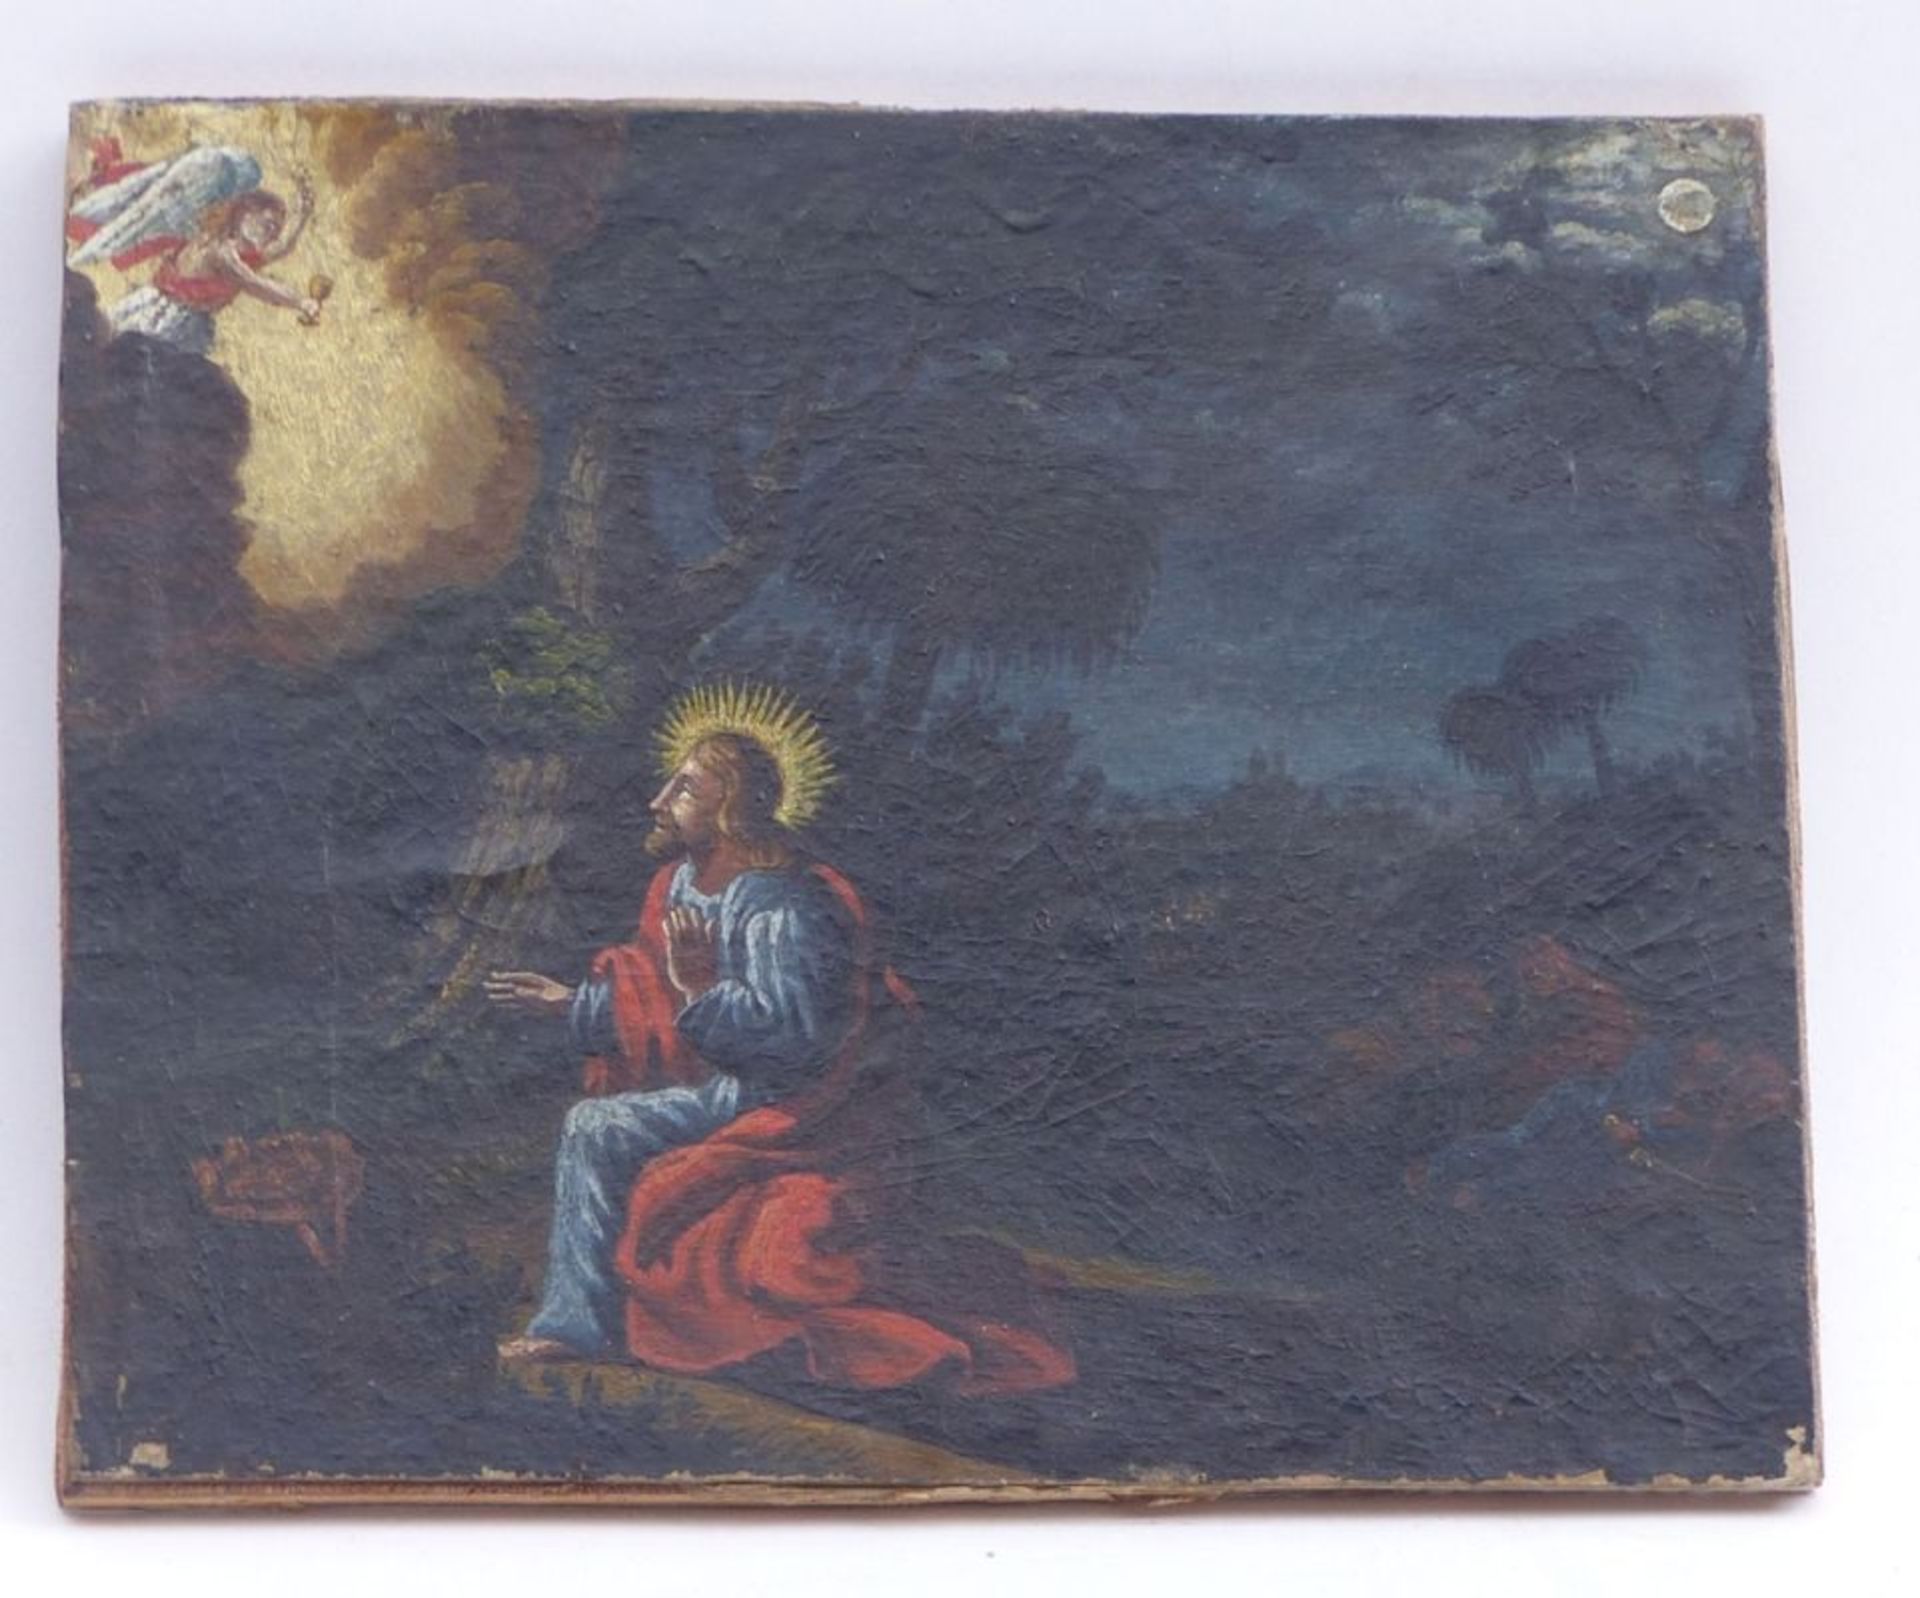 Jesus im Garten Gethsemane19. Jh.Öl/Pappe, auf Holz aufgezogen. 15,3 x 18 cm; ungerahmt. - - Bild 2 aus 3